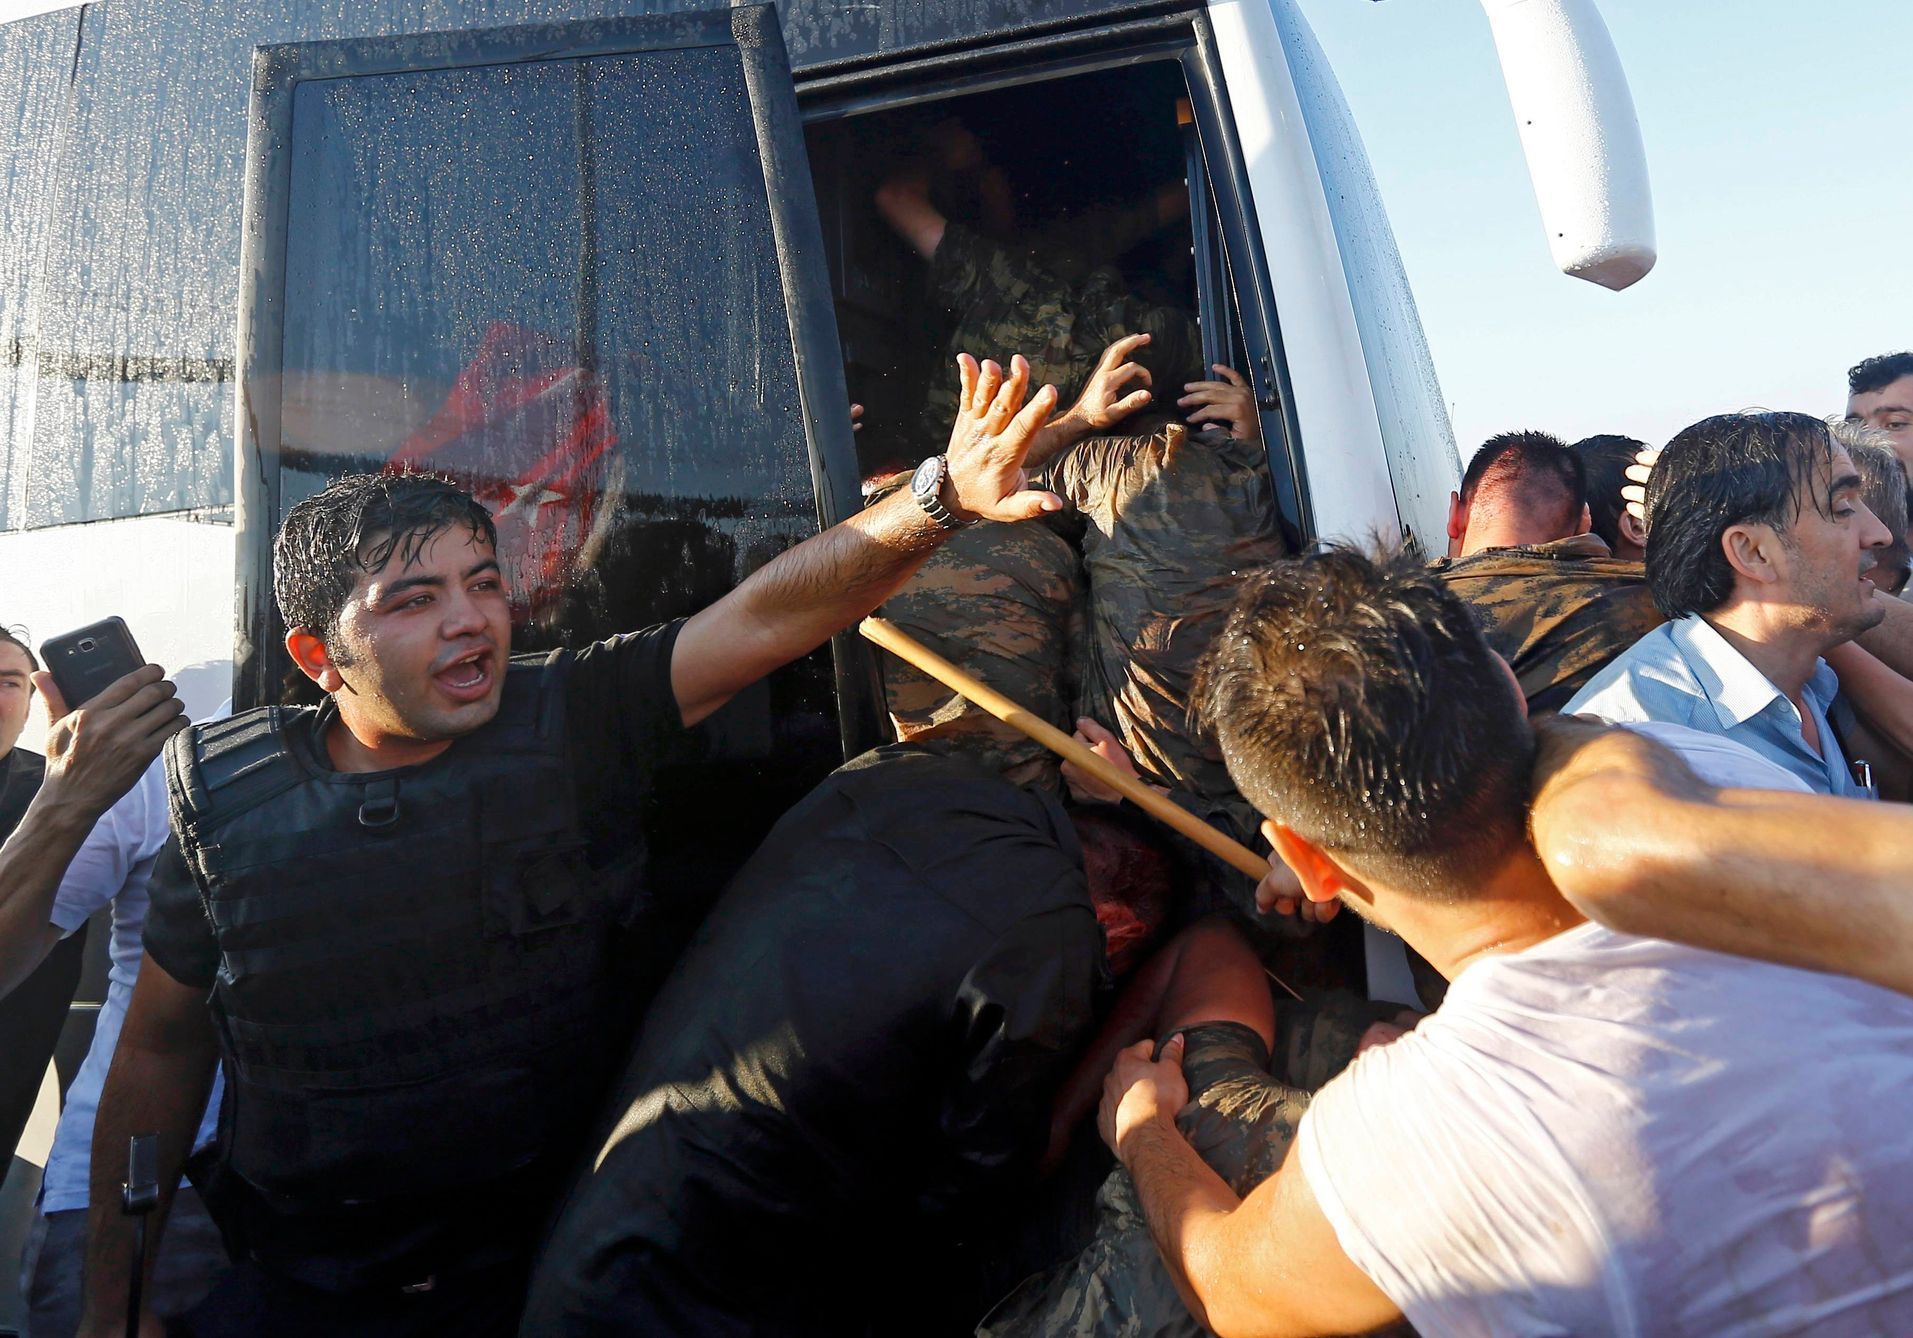 Dav u mostu přes Bospor v Istanbulu chce linčovat zadržené vojáky